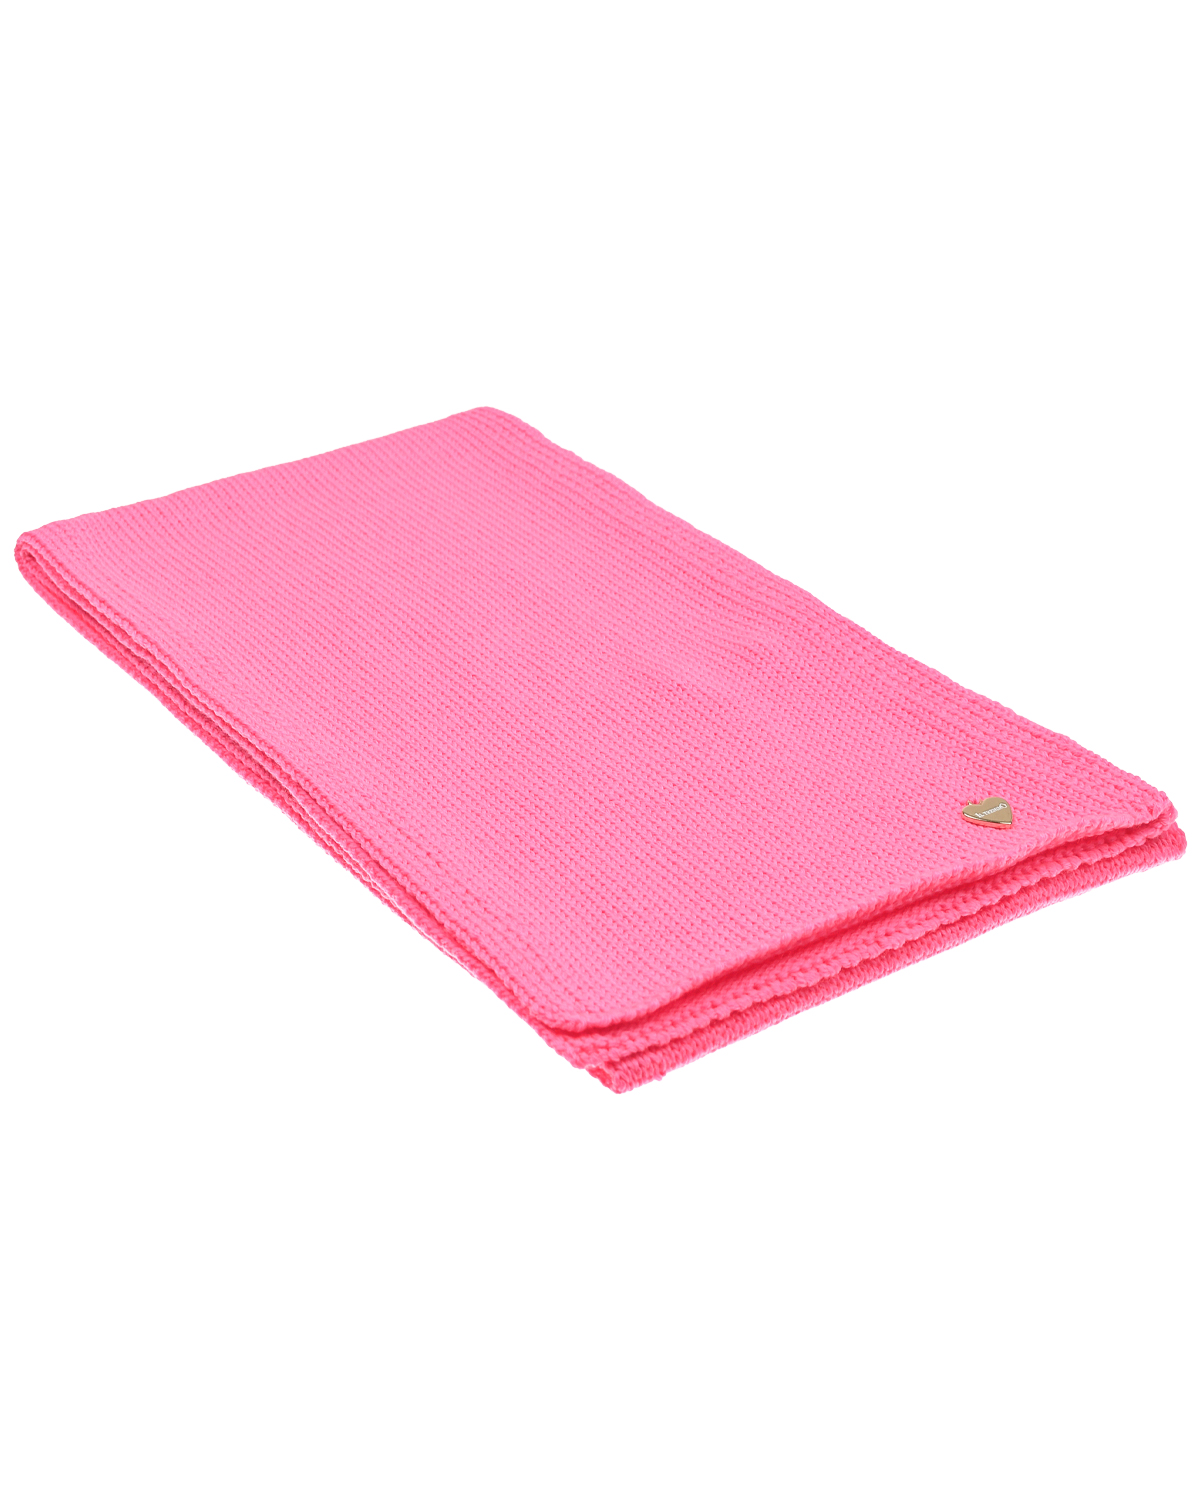 Розовый шарф, 140x19 см Il Trenino детский, размер unica - фото 1